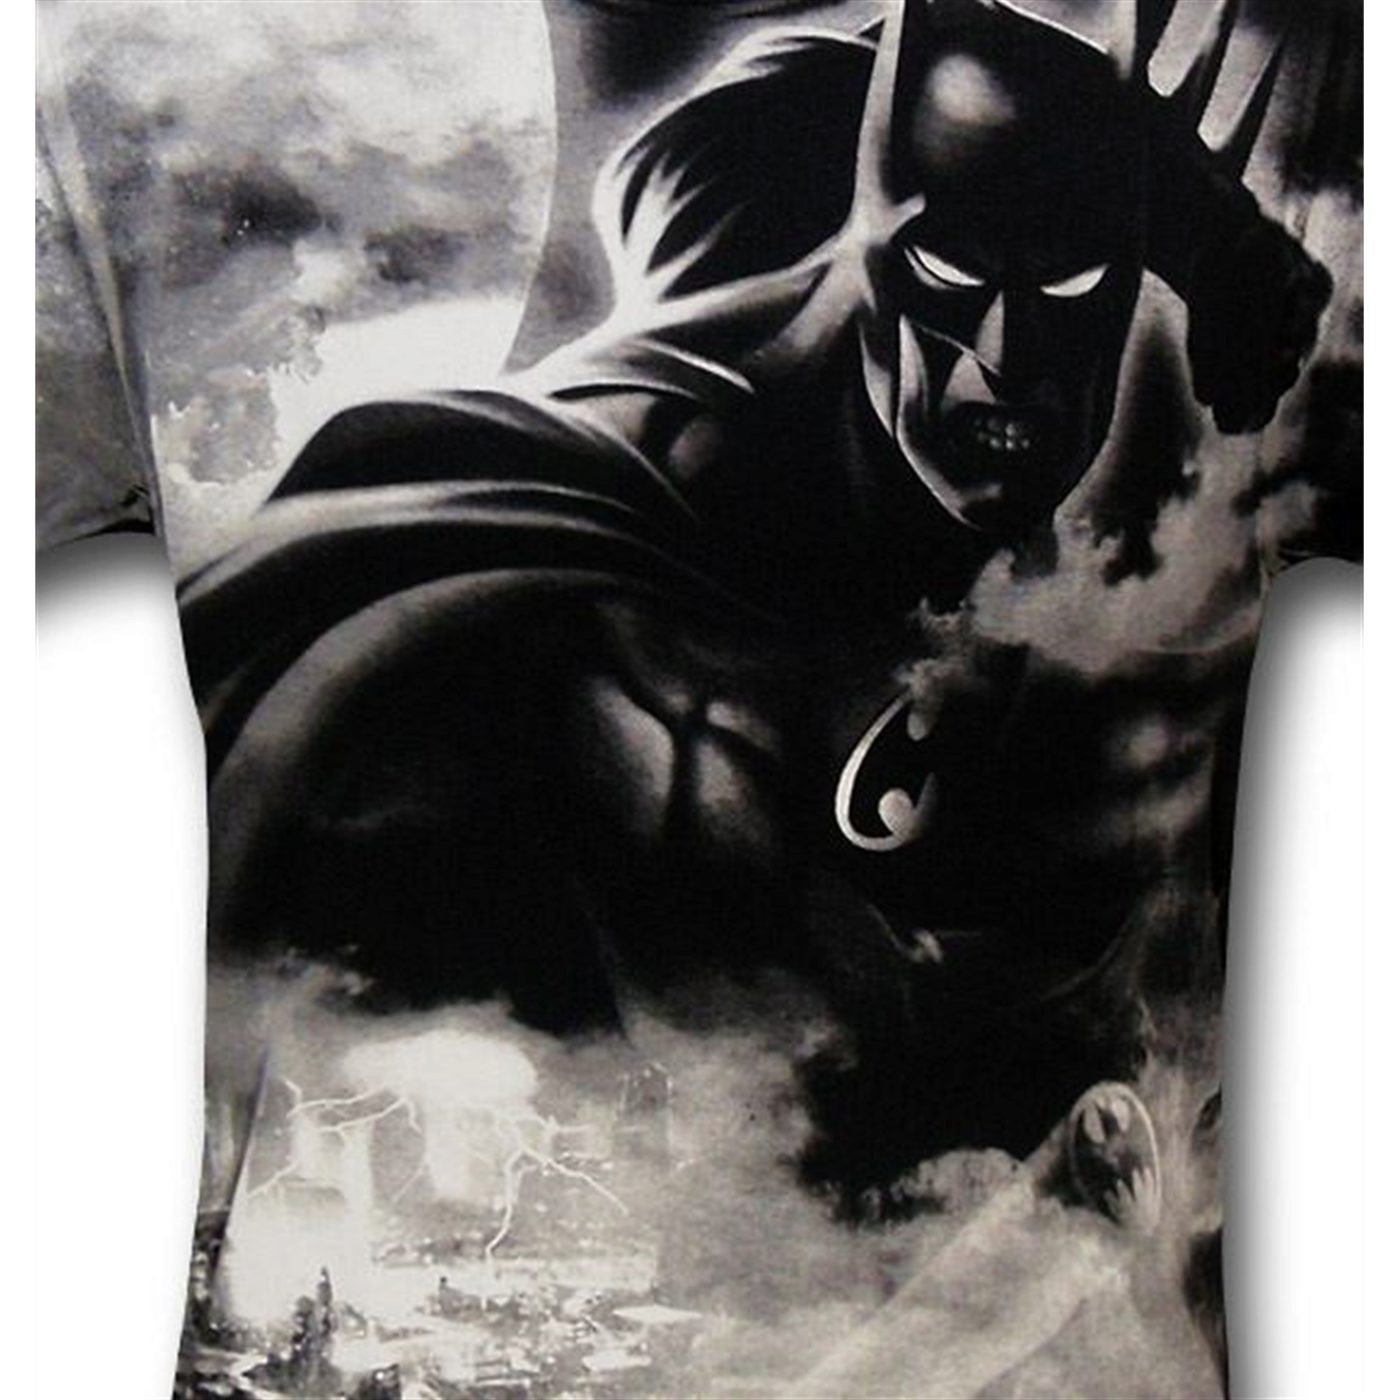 Batman Dark Knight Full Body Print T-Shirt